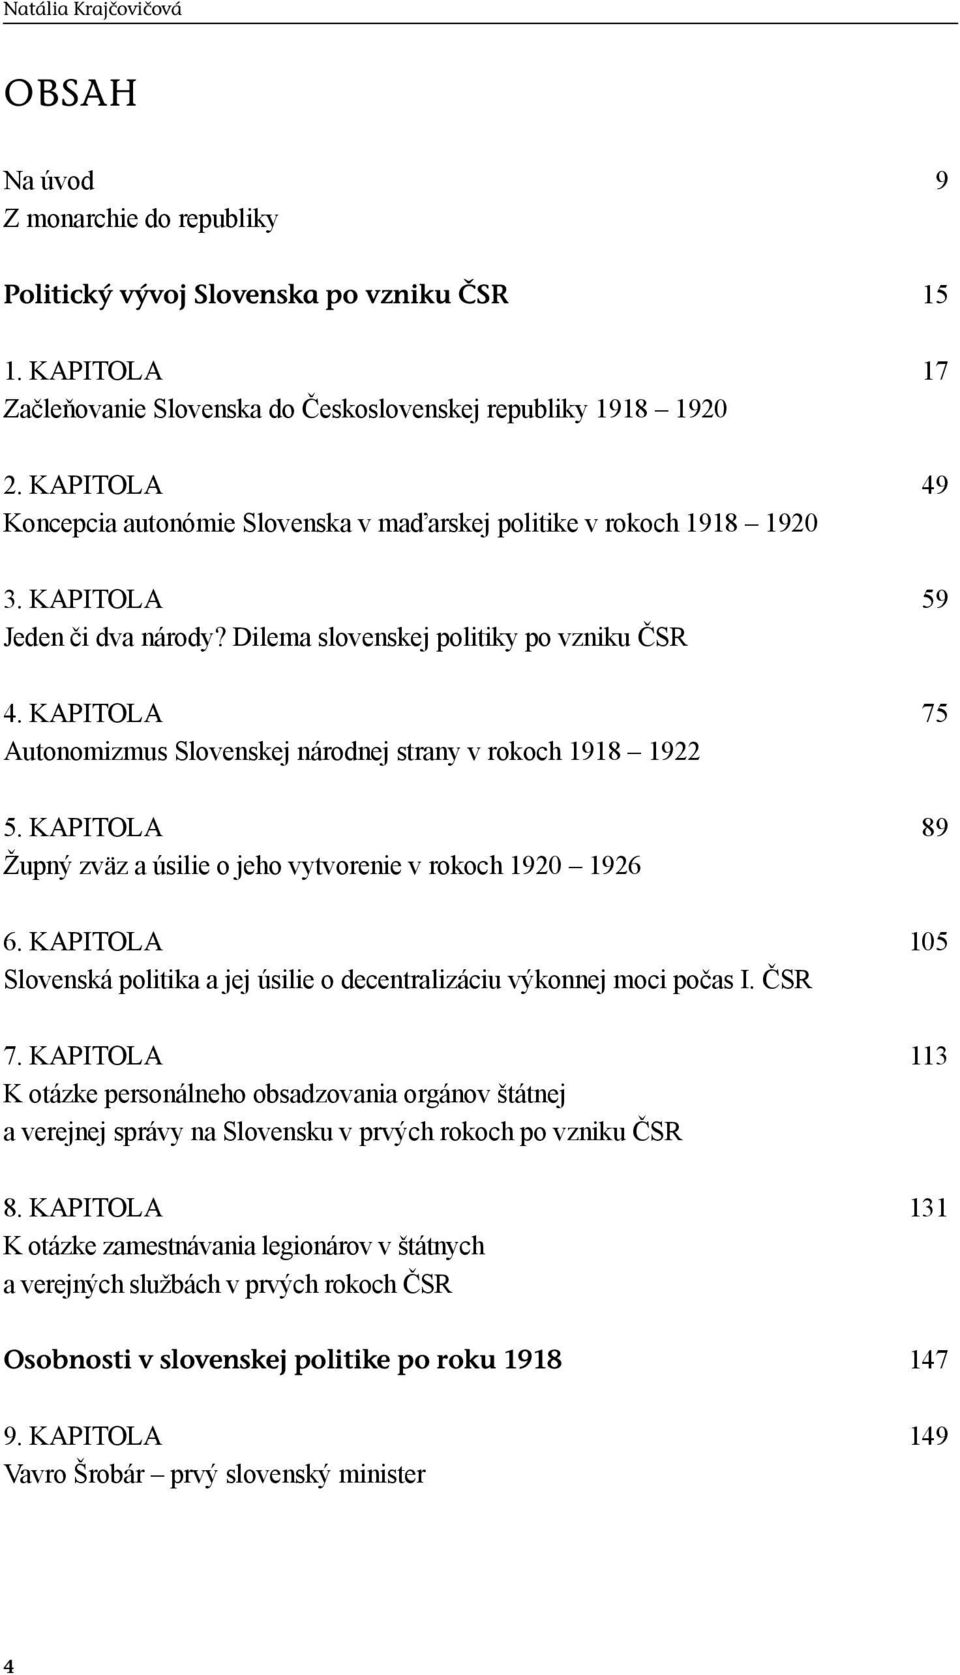 KAPITOLA 75 Autonomizmus Slovenskej národnej strany v rokoch 1918 1922 5. KAPITOLA 89 Župný zväz a úsilie o jeho vytvorenie v rokoch 1920 1926 6.